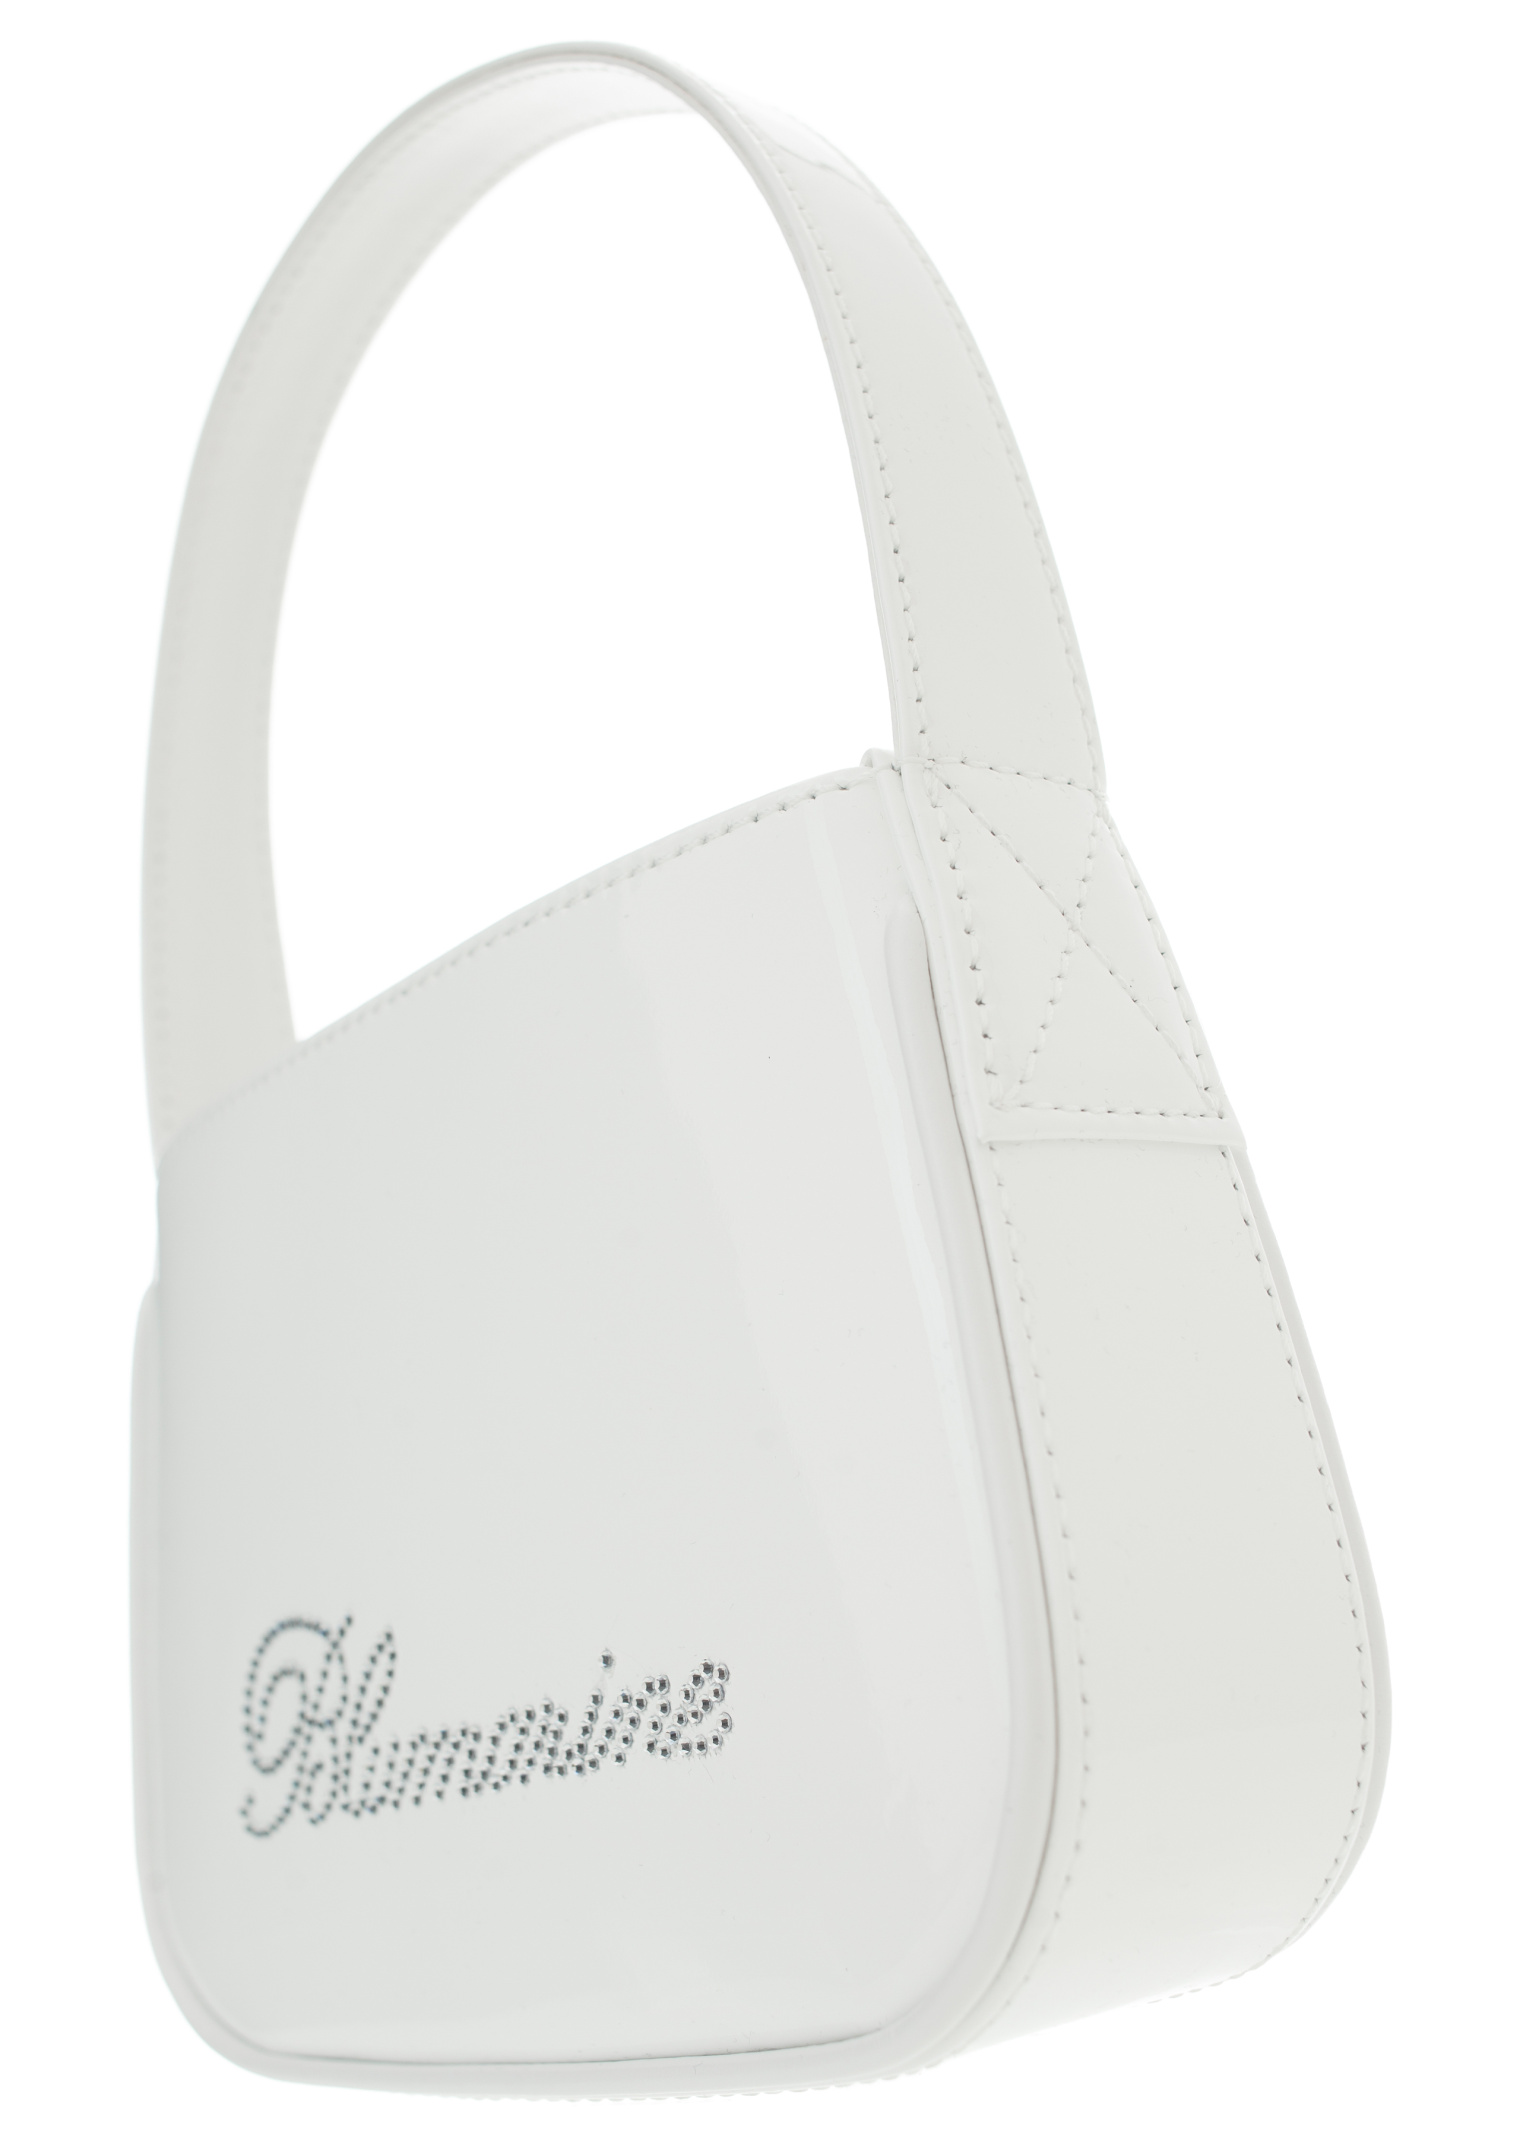 Buy Blumarine women white rhinestone logo bag for $840 online on 